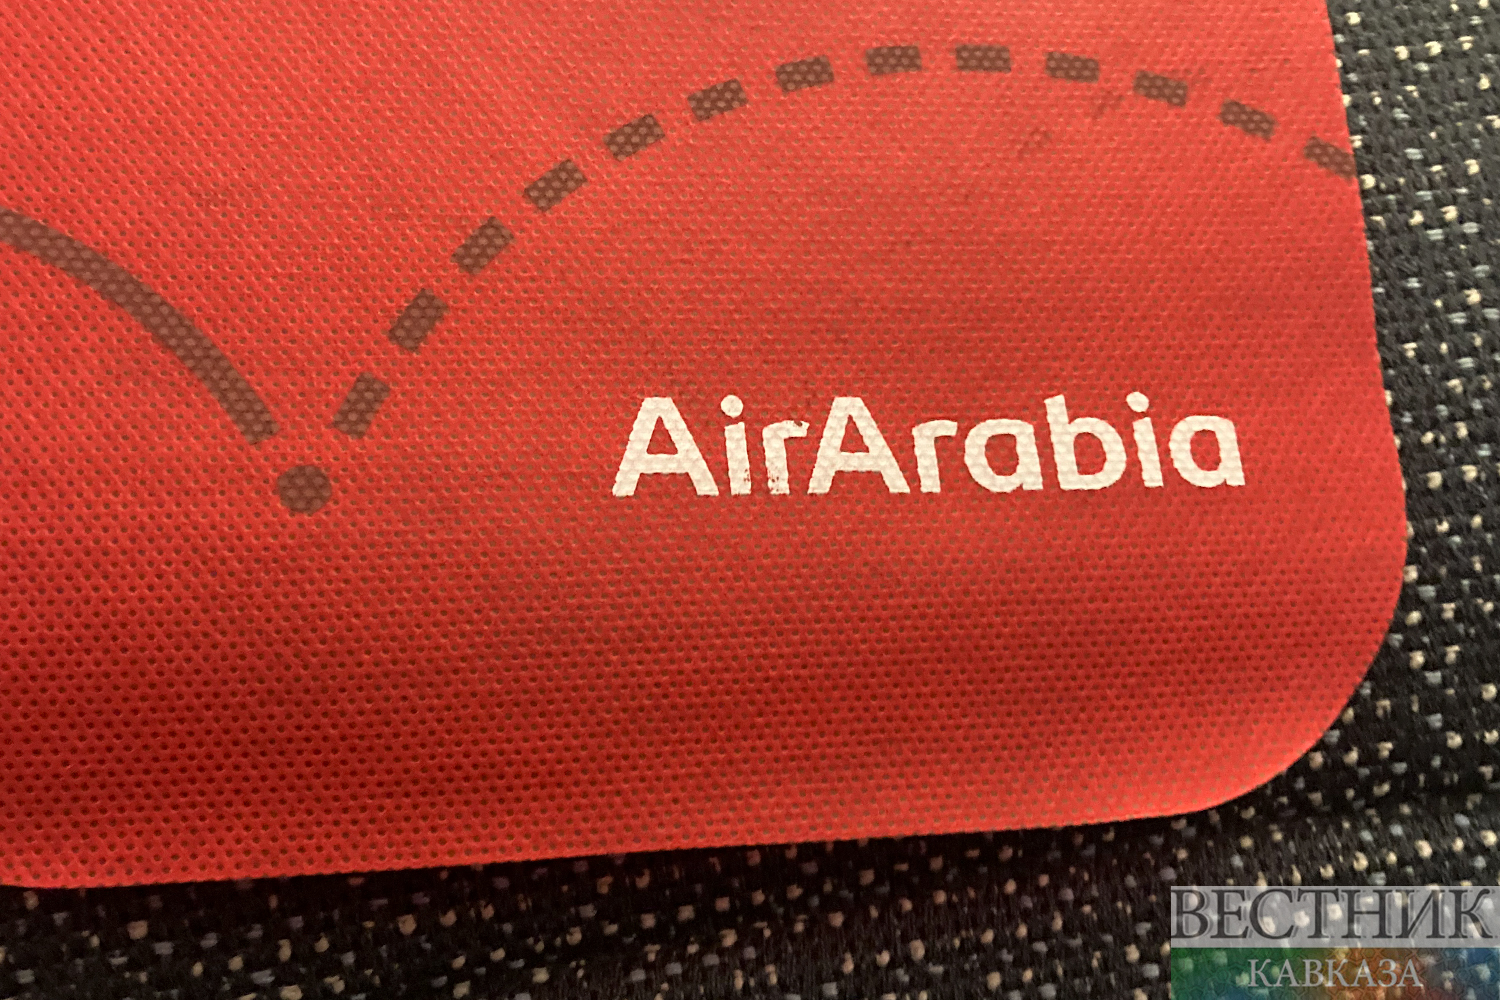 В салоне AirArabia